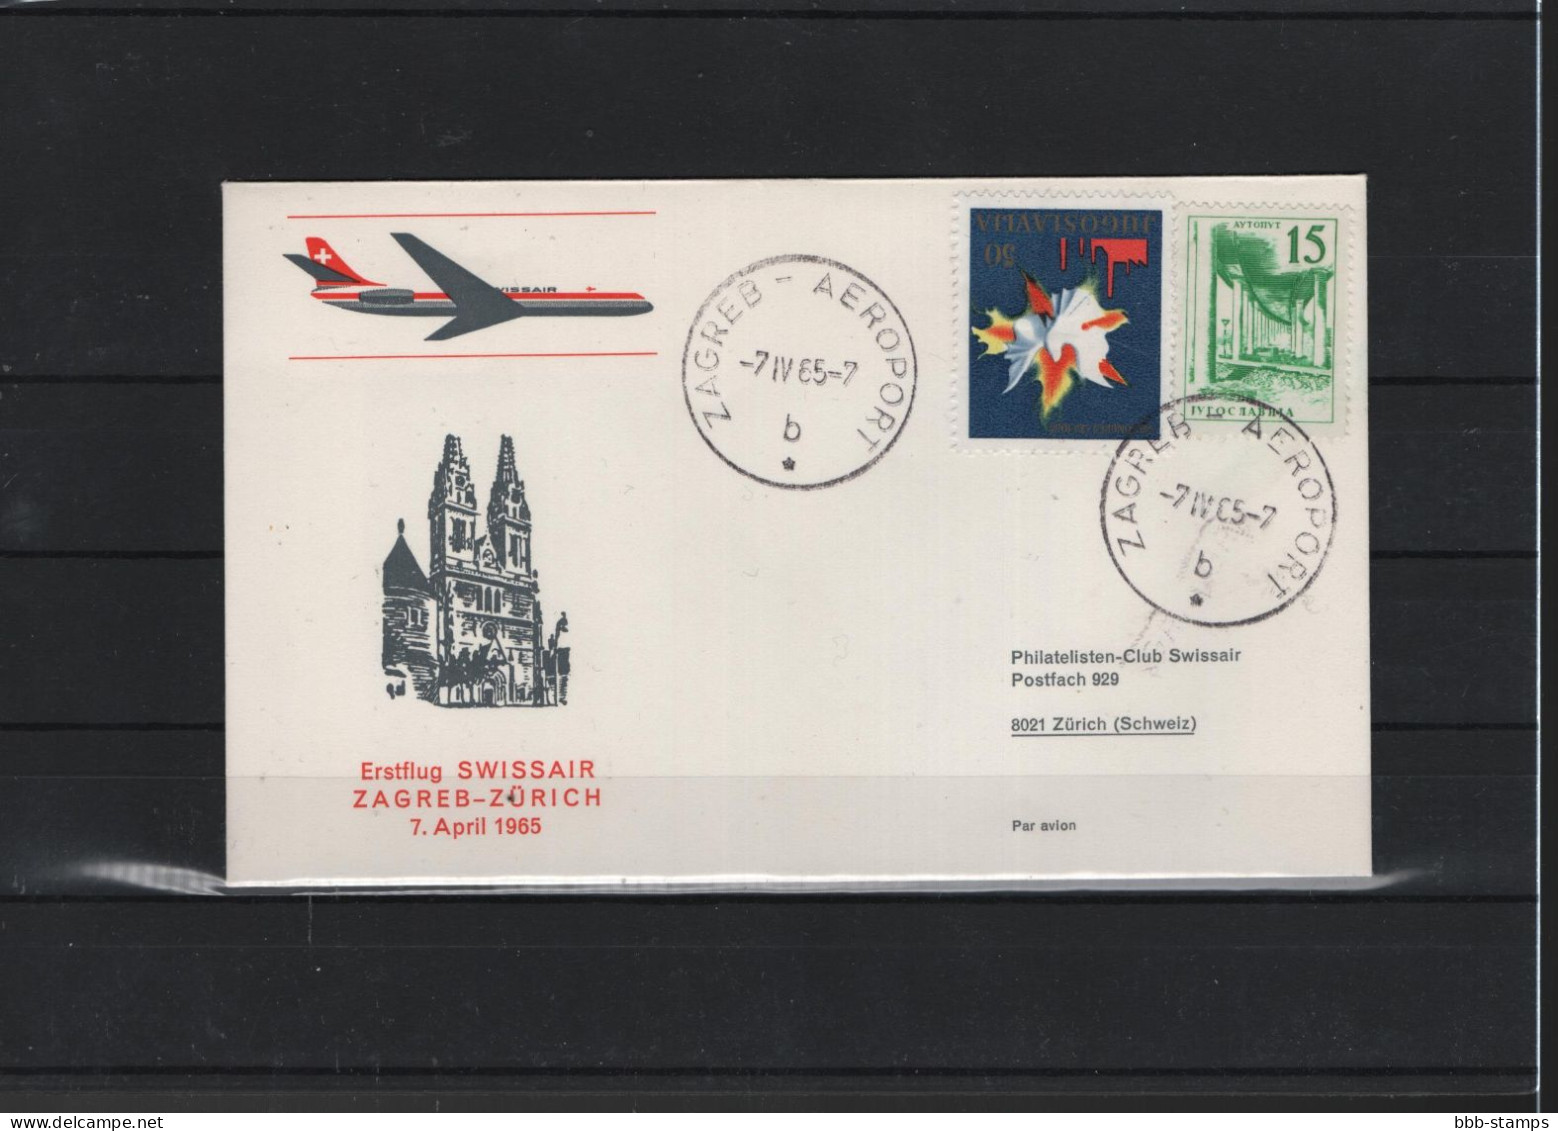 Schweiz Air Mail Swissair  FFC  7.4.1965 Zagred - Zürich - Primeros Vuelos